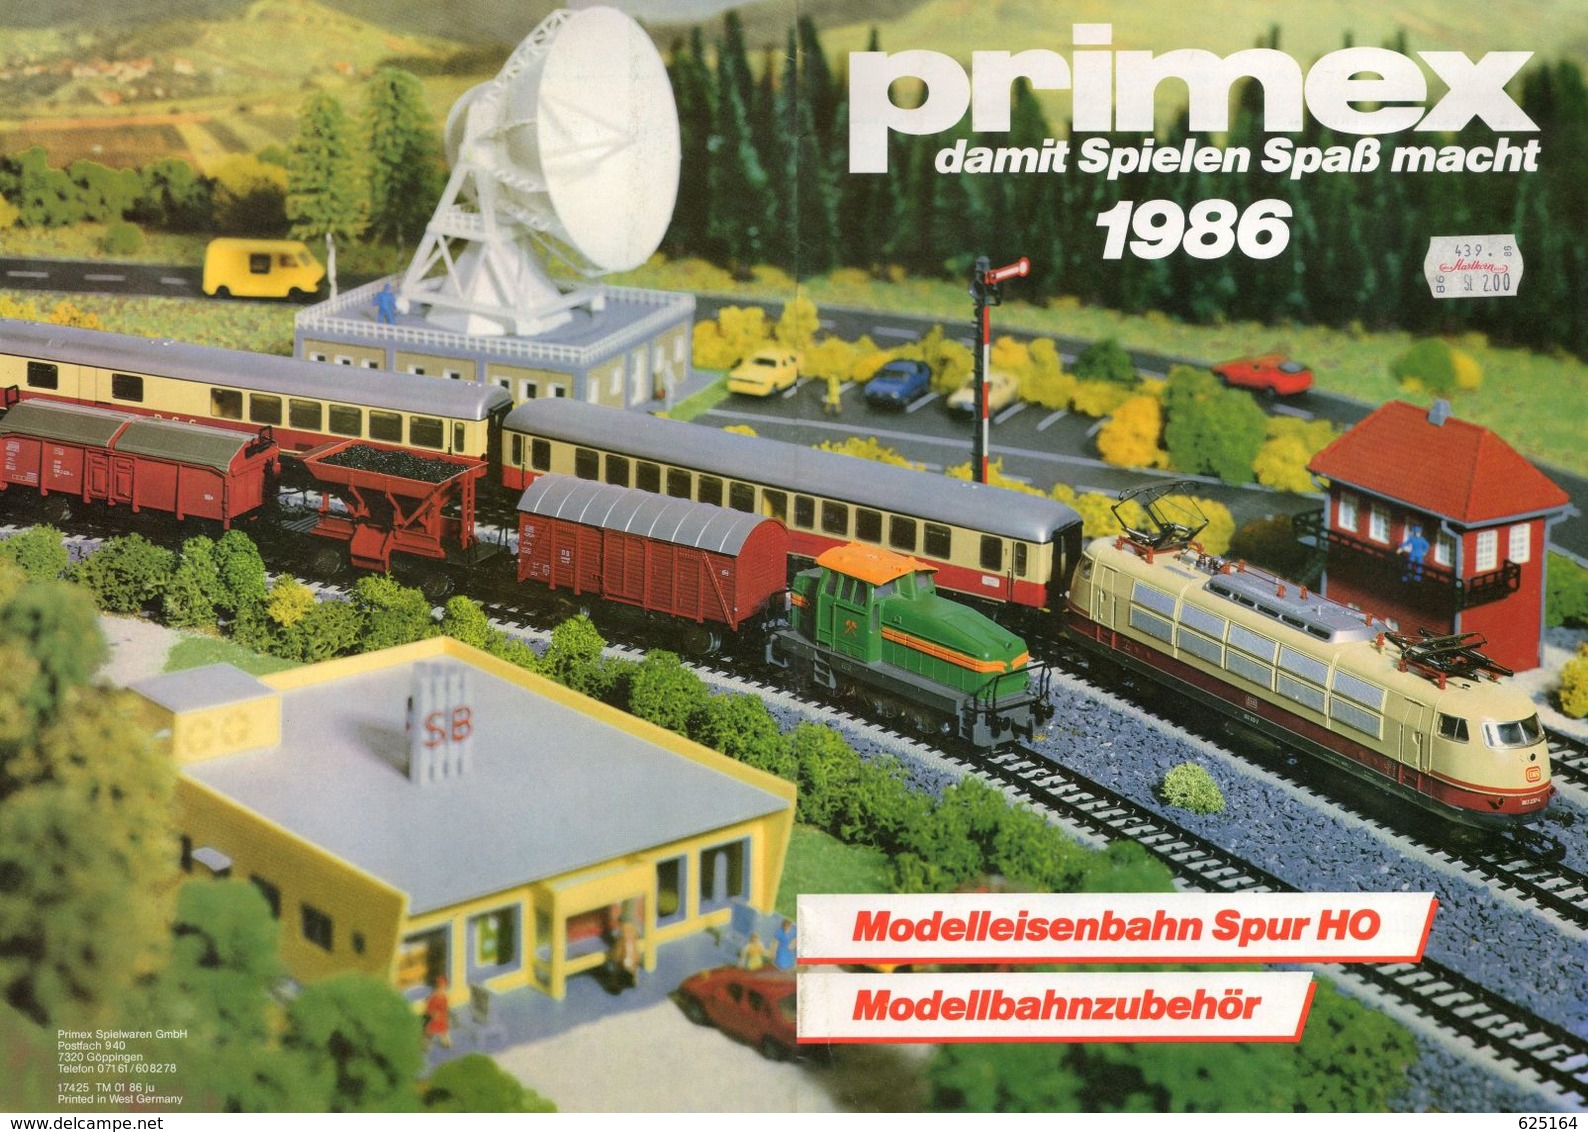 Catalogue PRIMEX 1986 Damt Spielen Spaß Macht Modellbahnzubehör Märklin HO - Alemania